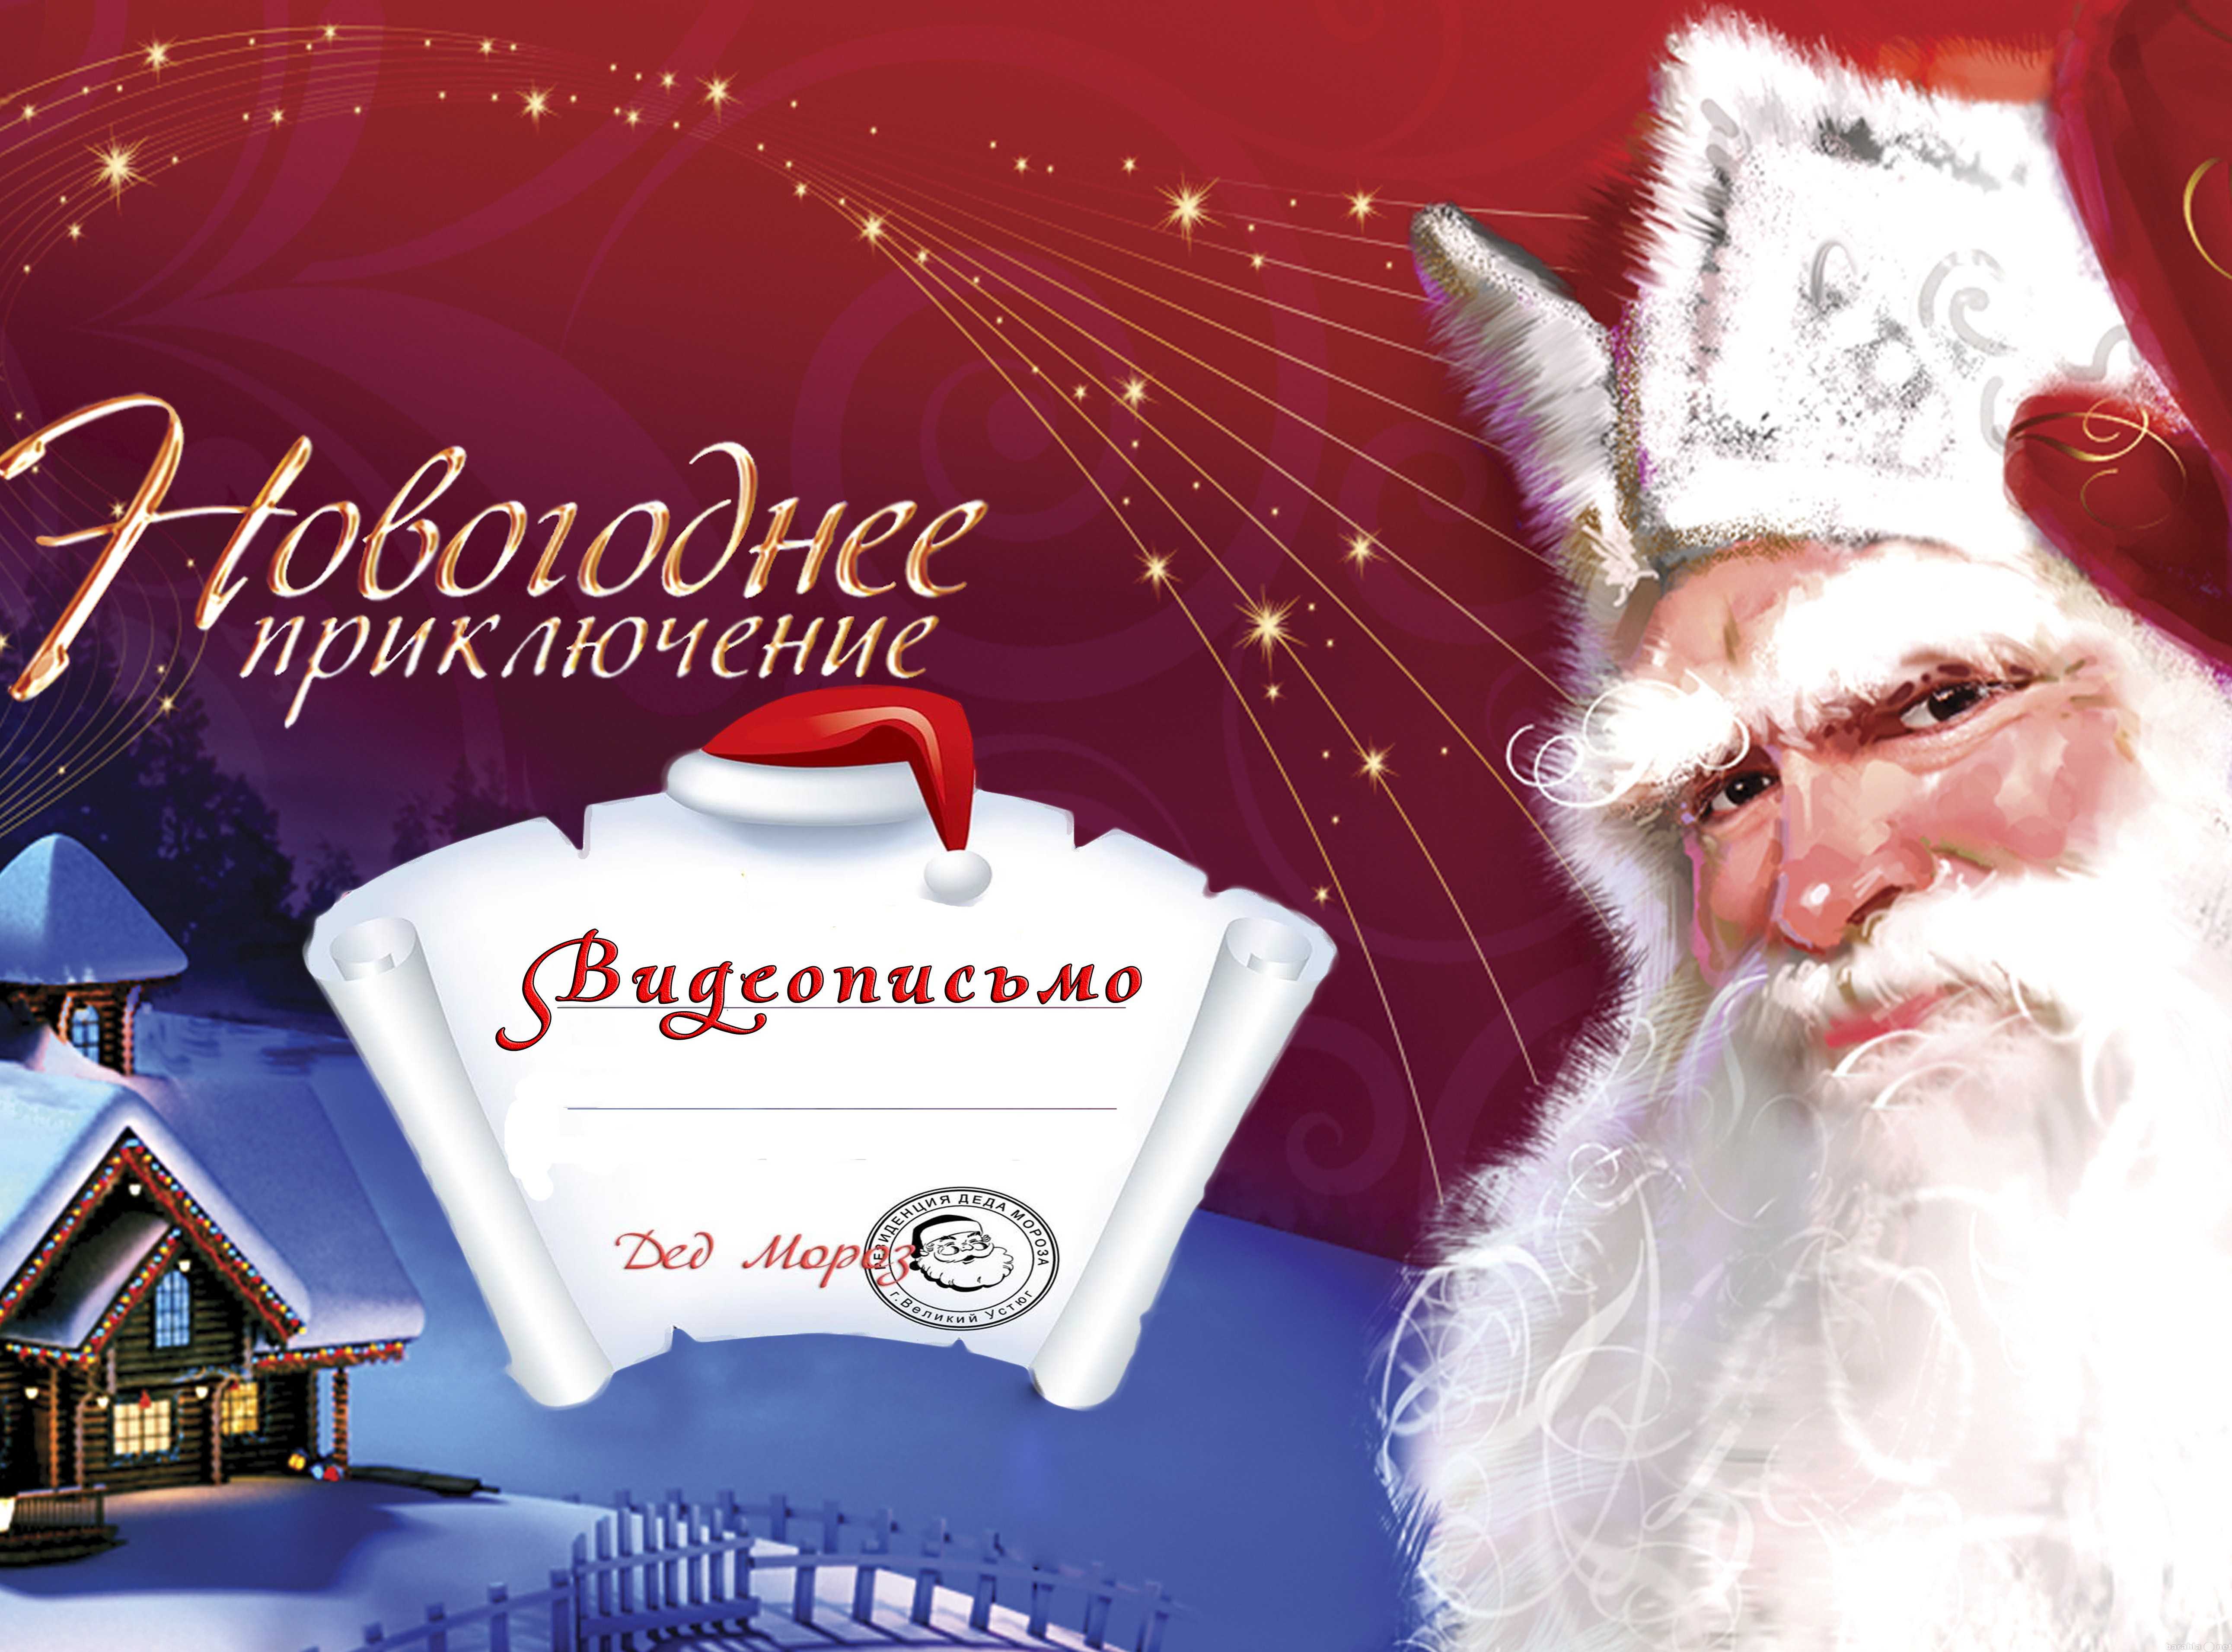 Именные поздравления с новым годом | pzdb.ru - поздравления на все случаи жизни